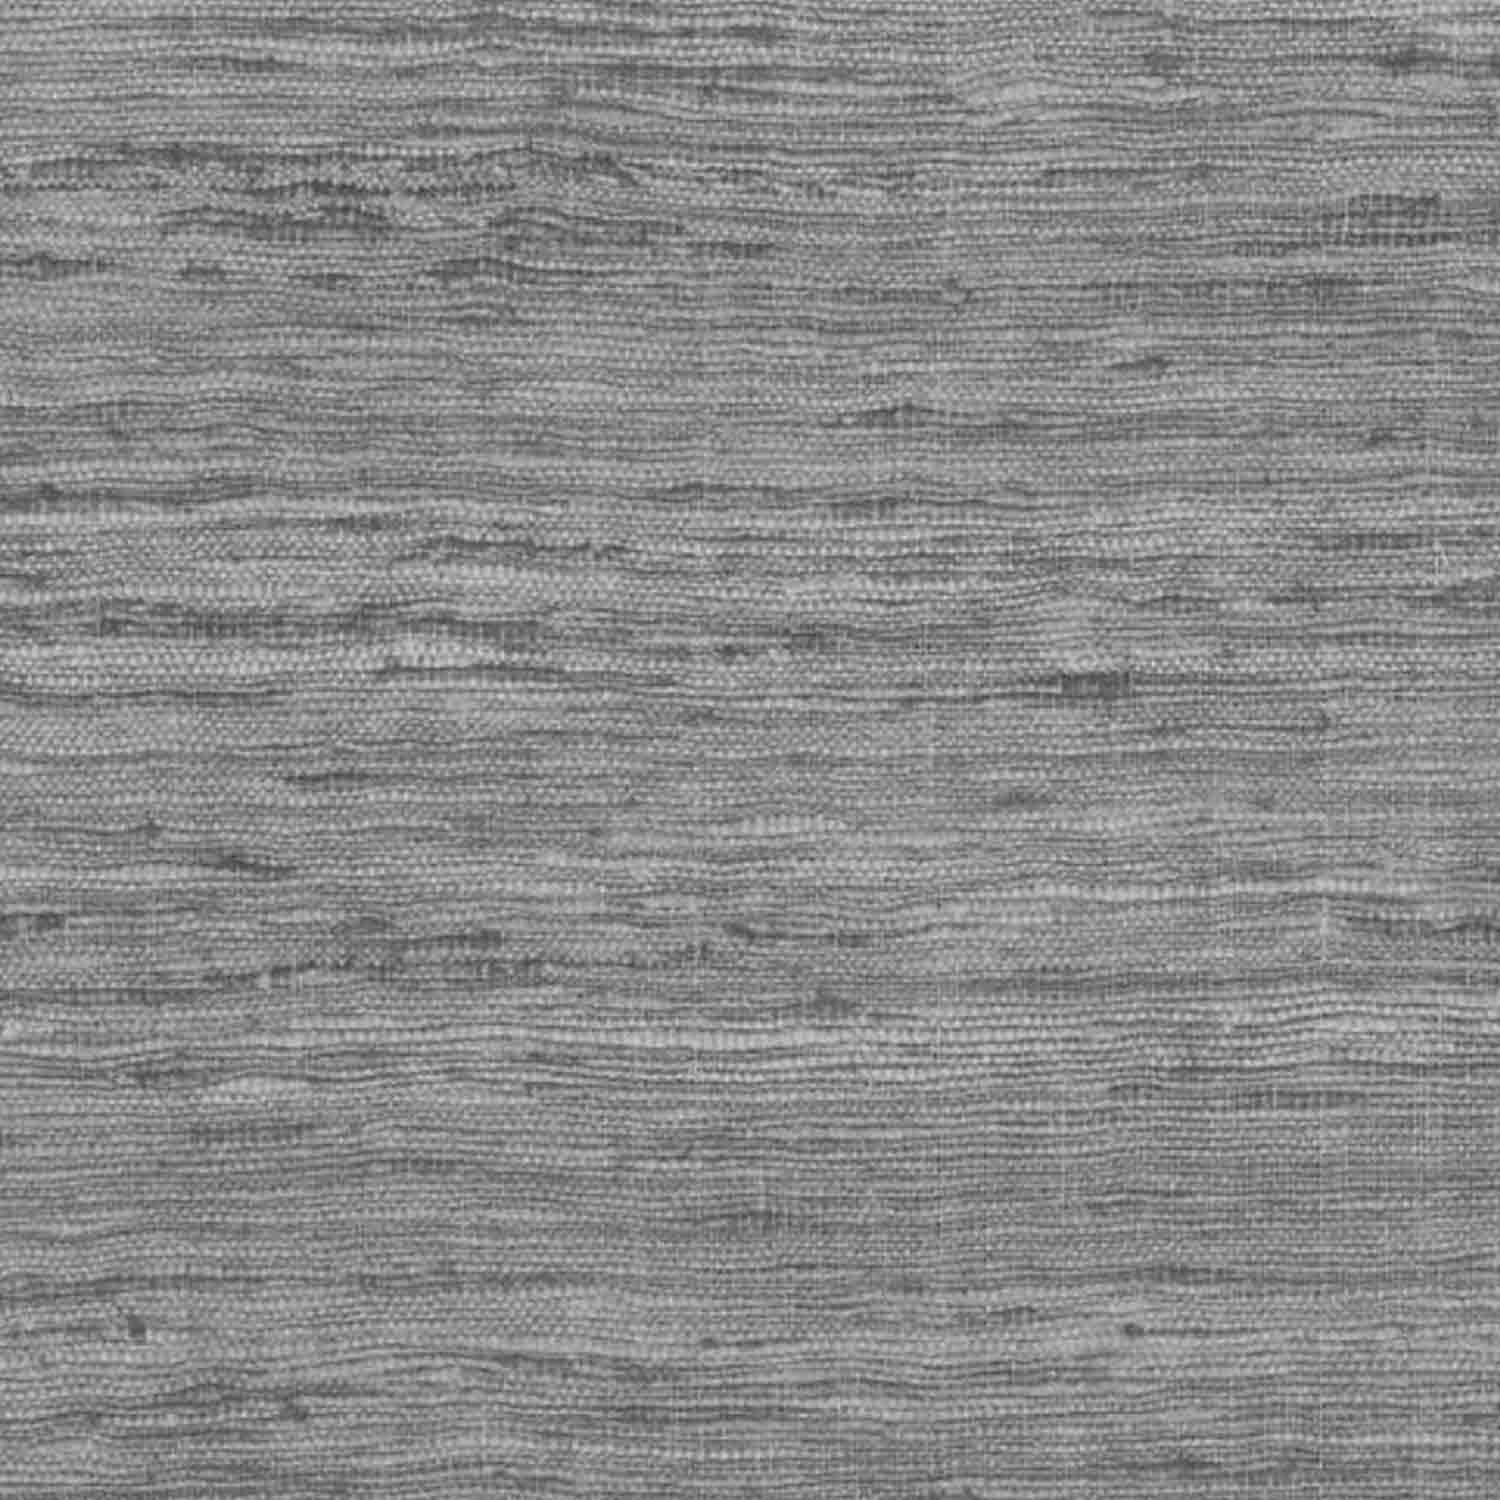 Harlow Black/Gray Textured Linen